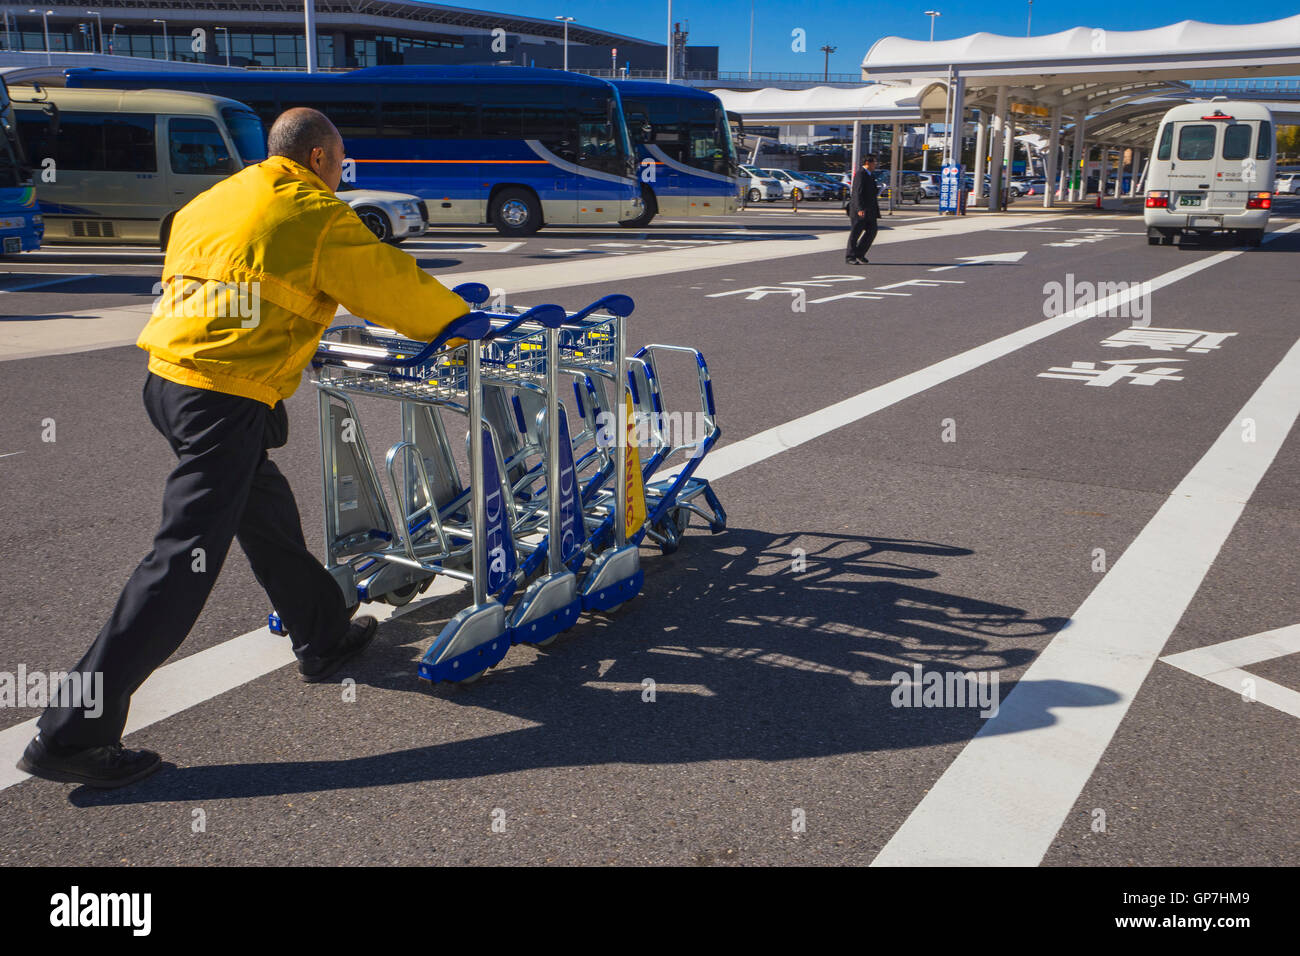 Man pushing luggage trolleys, narita international airport, tokyo, japan Stock Photo